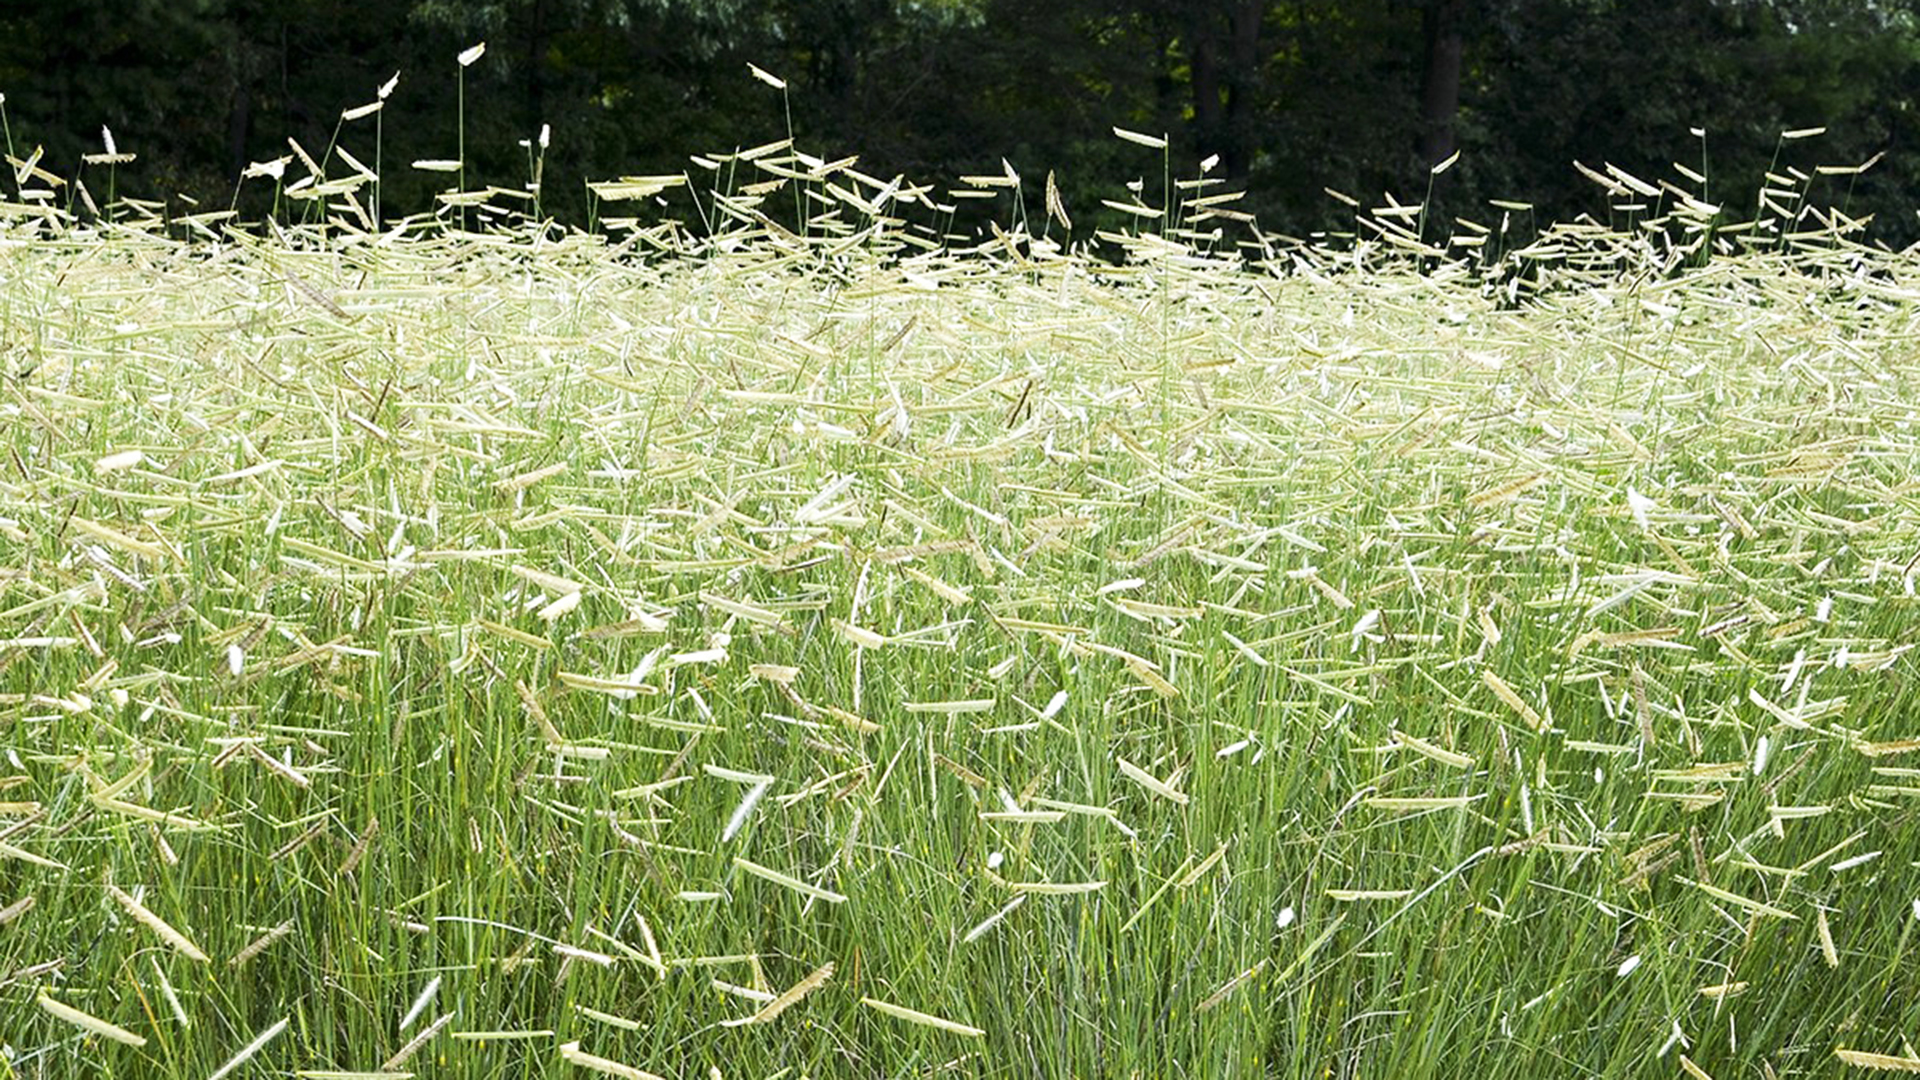 Bluegramma native grasses